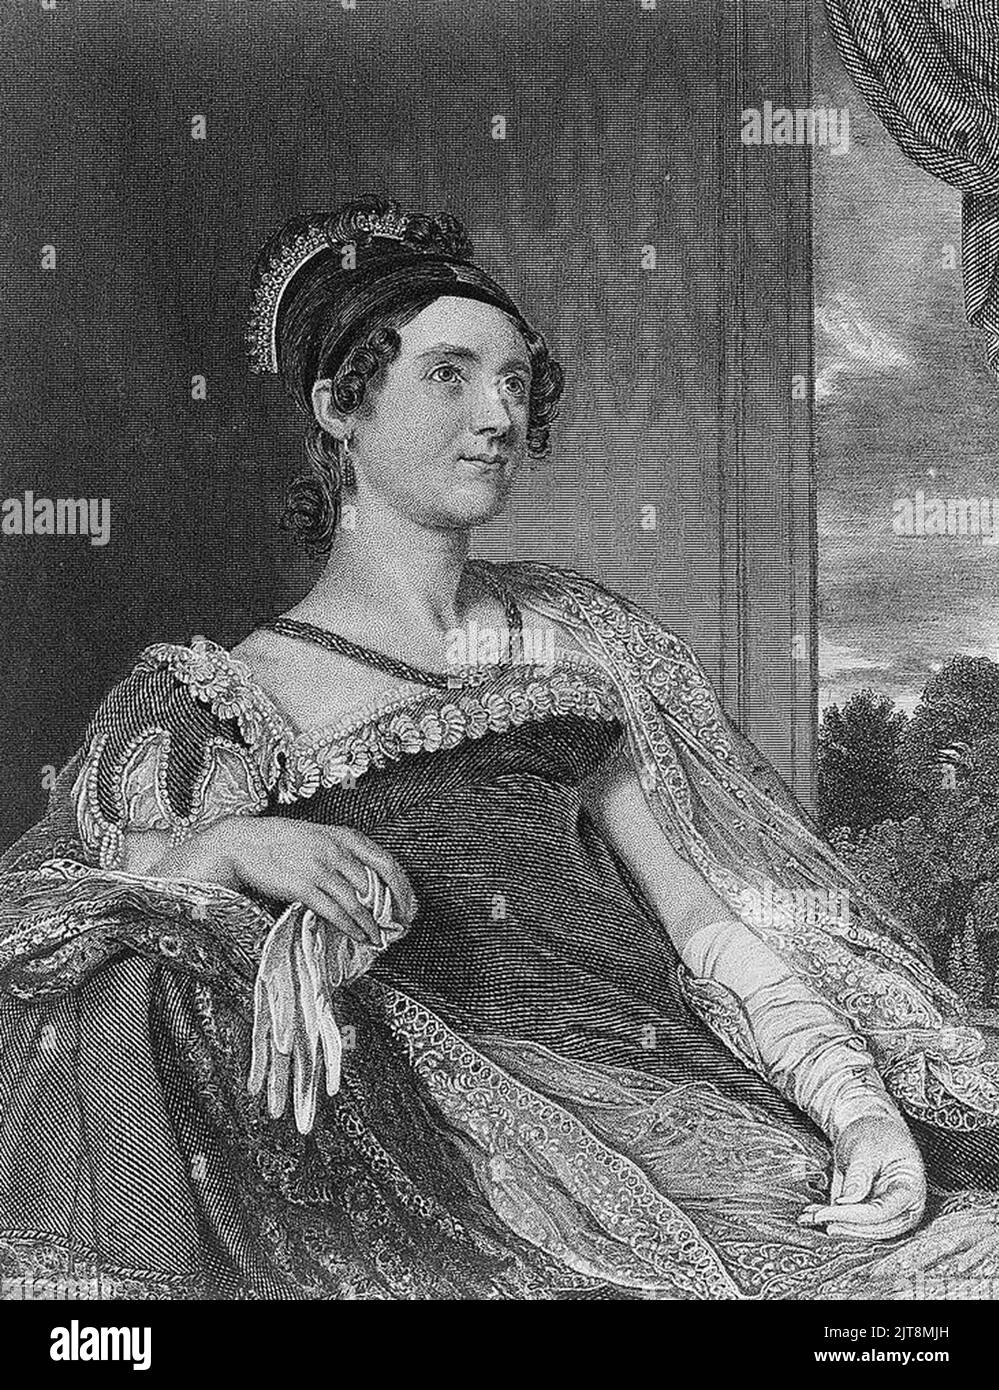 Un ritratto di Louisa Catherine Johnson Adams. Era la moglie e la prima Signora di John Quincy Adams, il 6th presidente degli Stati Uniti. Foto Stock